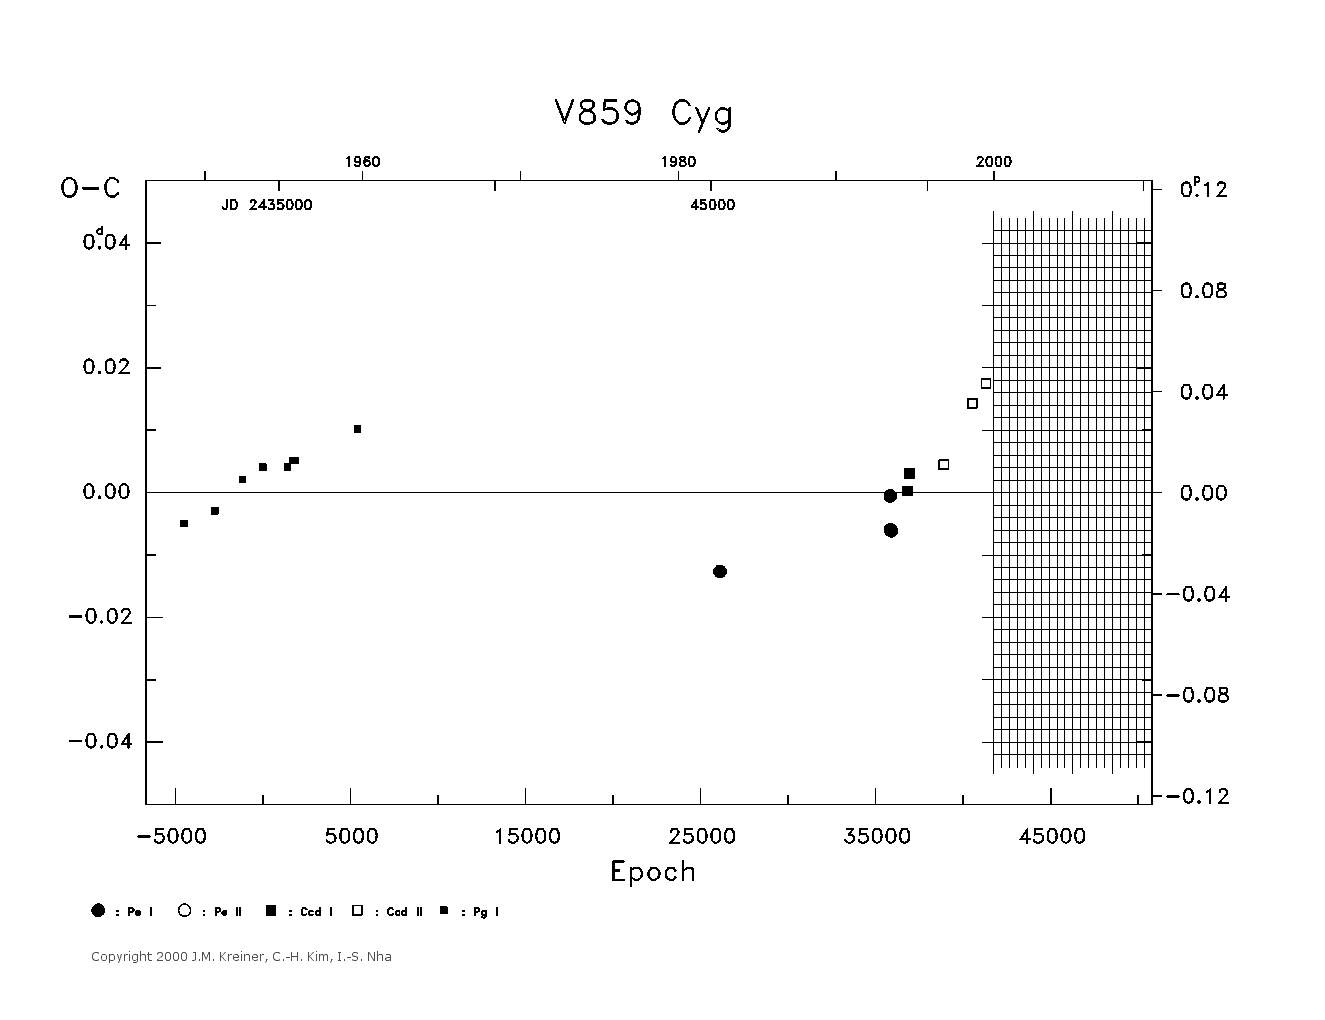 [IMAGE: large V859 CYG O-C diagram]